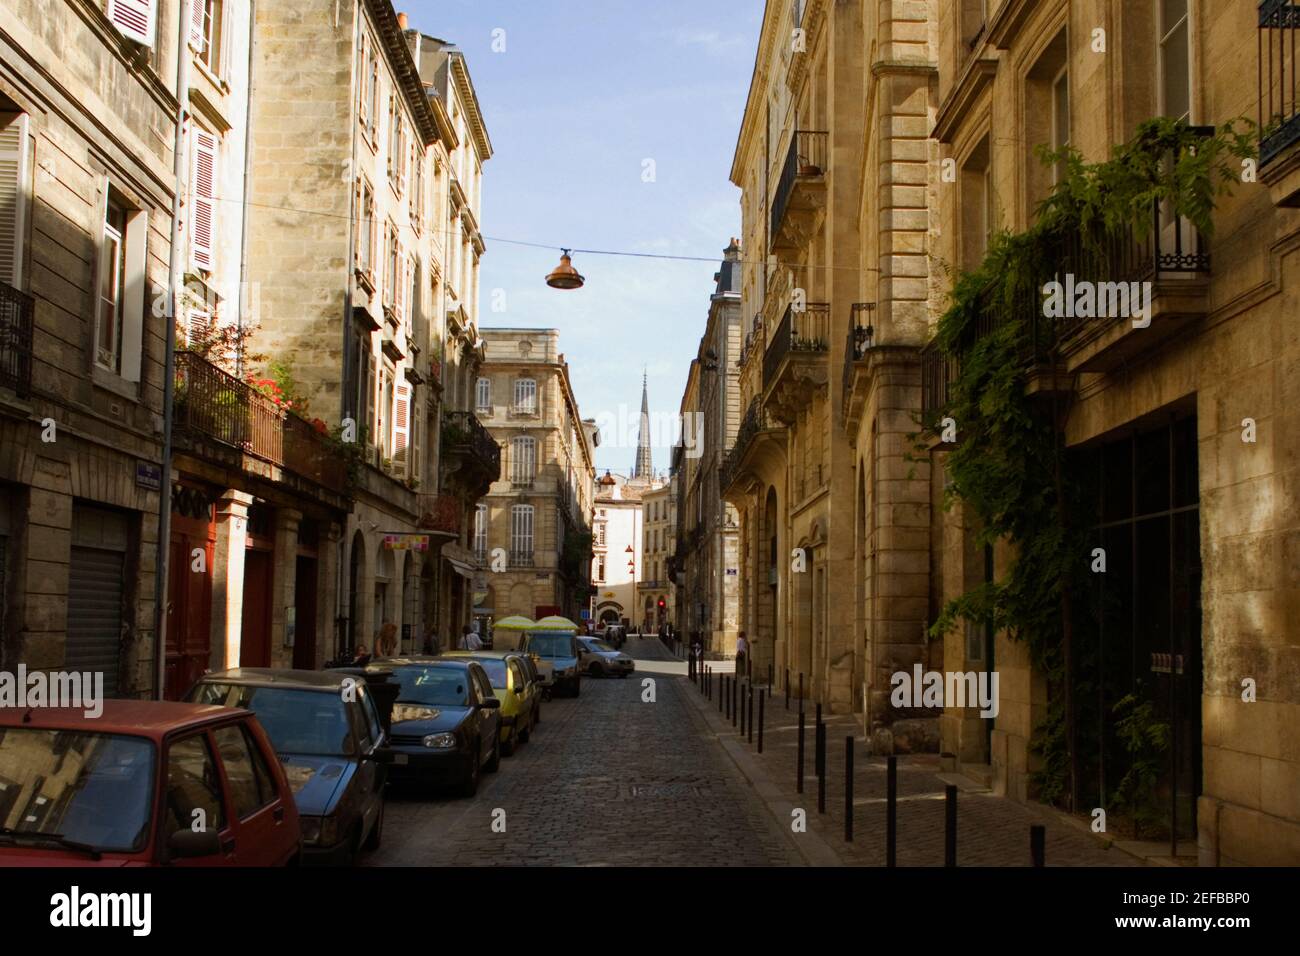 Buildings along a street, Vieux Bordeaux, Bordeaux, France Stock Photo ...